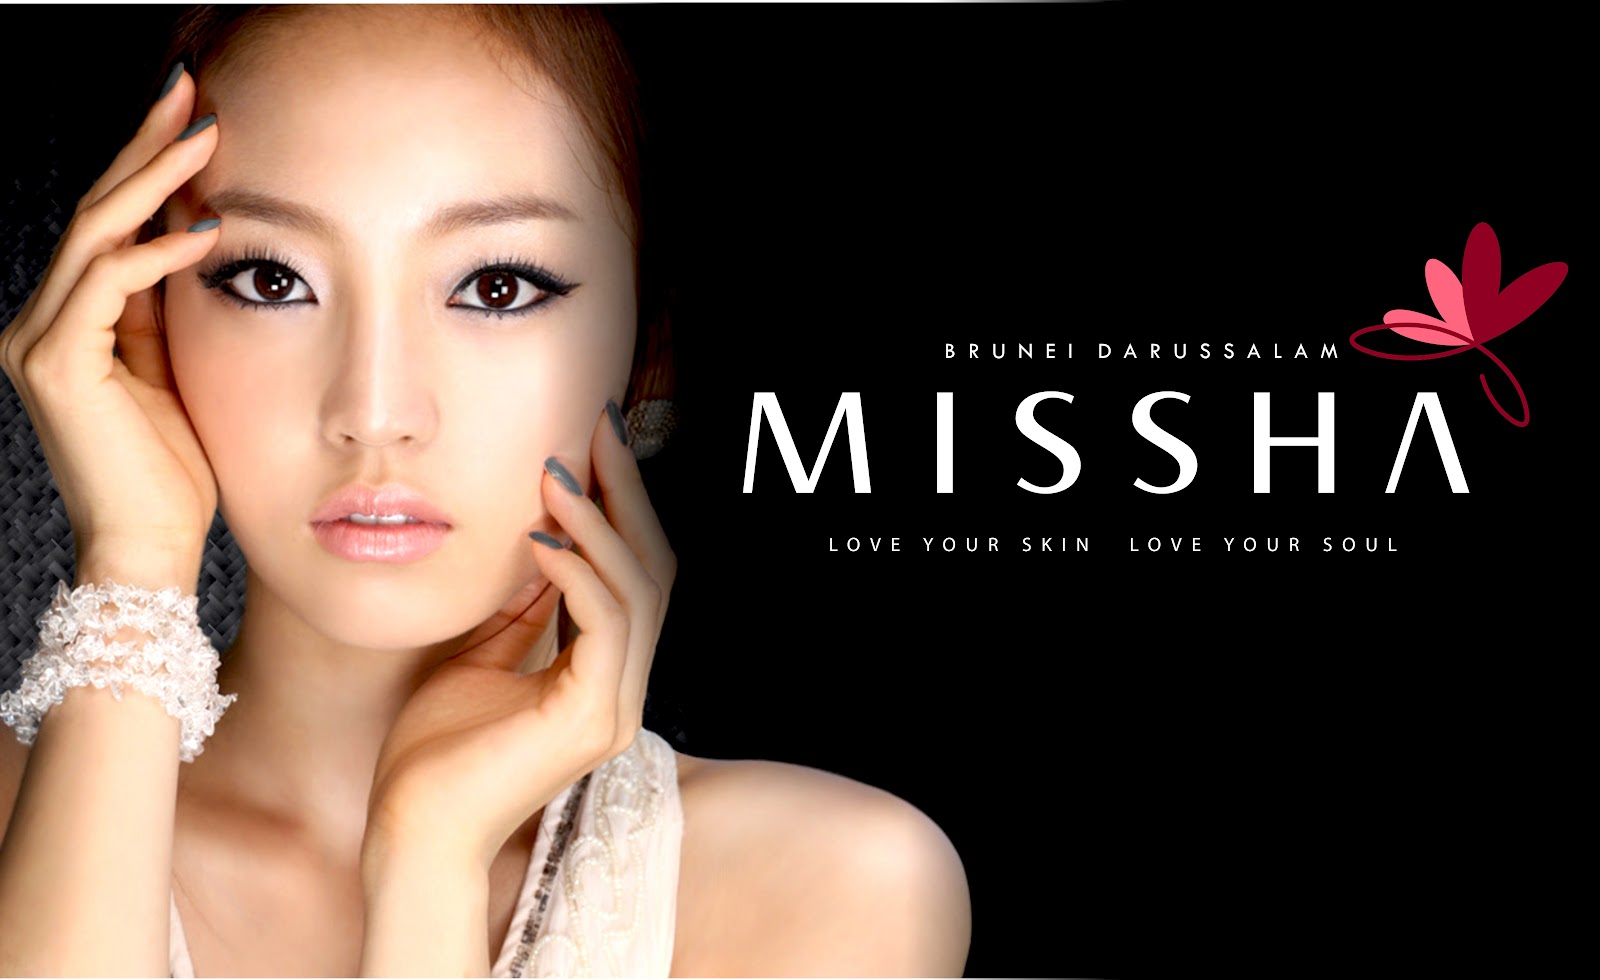 Официальные сайты косметики кореи